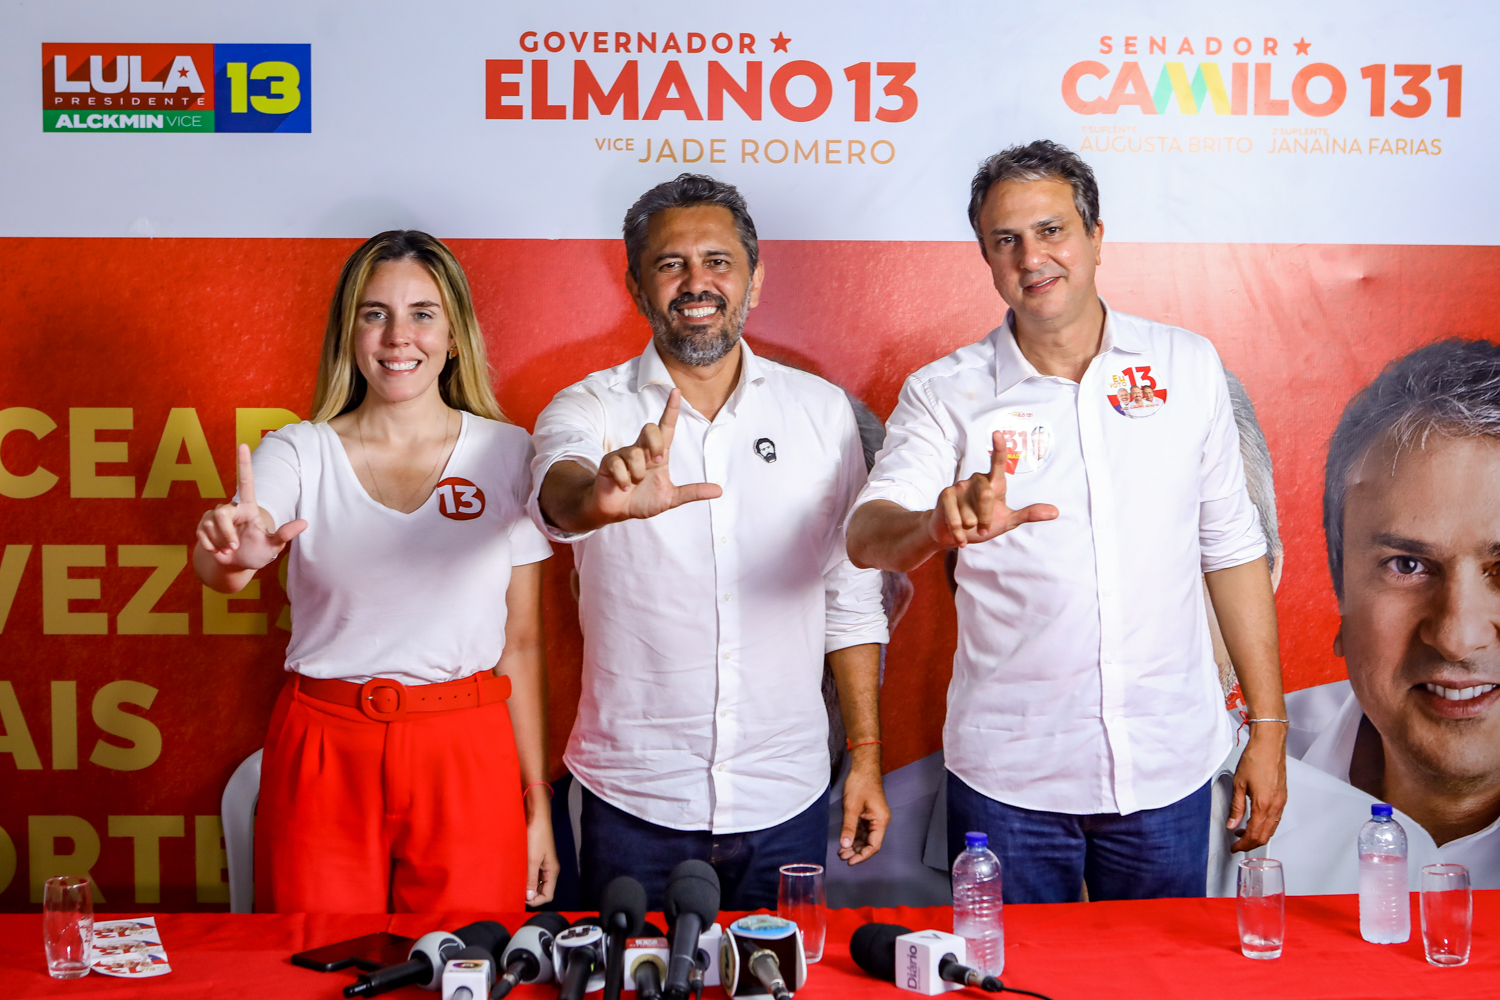 Elmano de Freitas é eleito governador do Ceará no primeiro turno com 54,02% dos votos